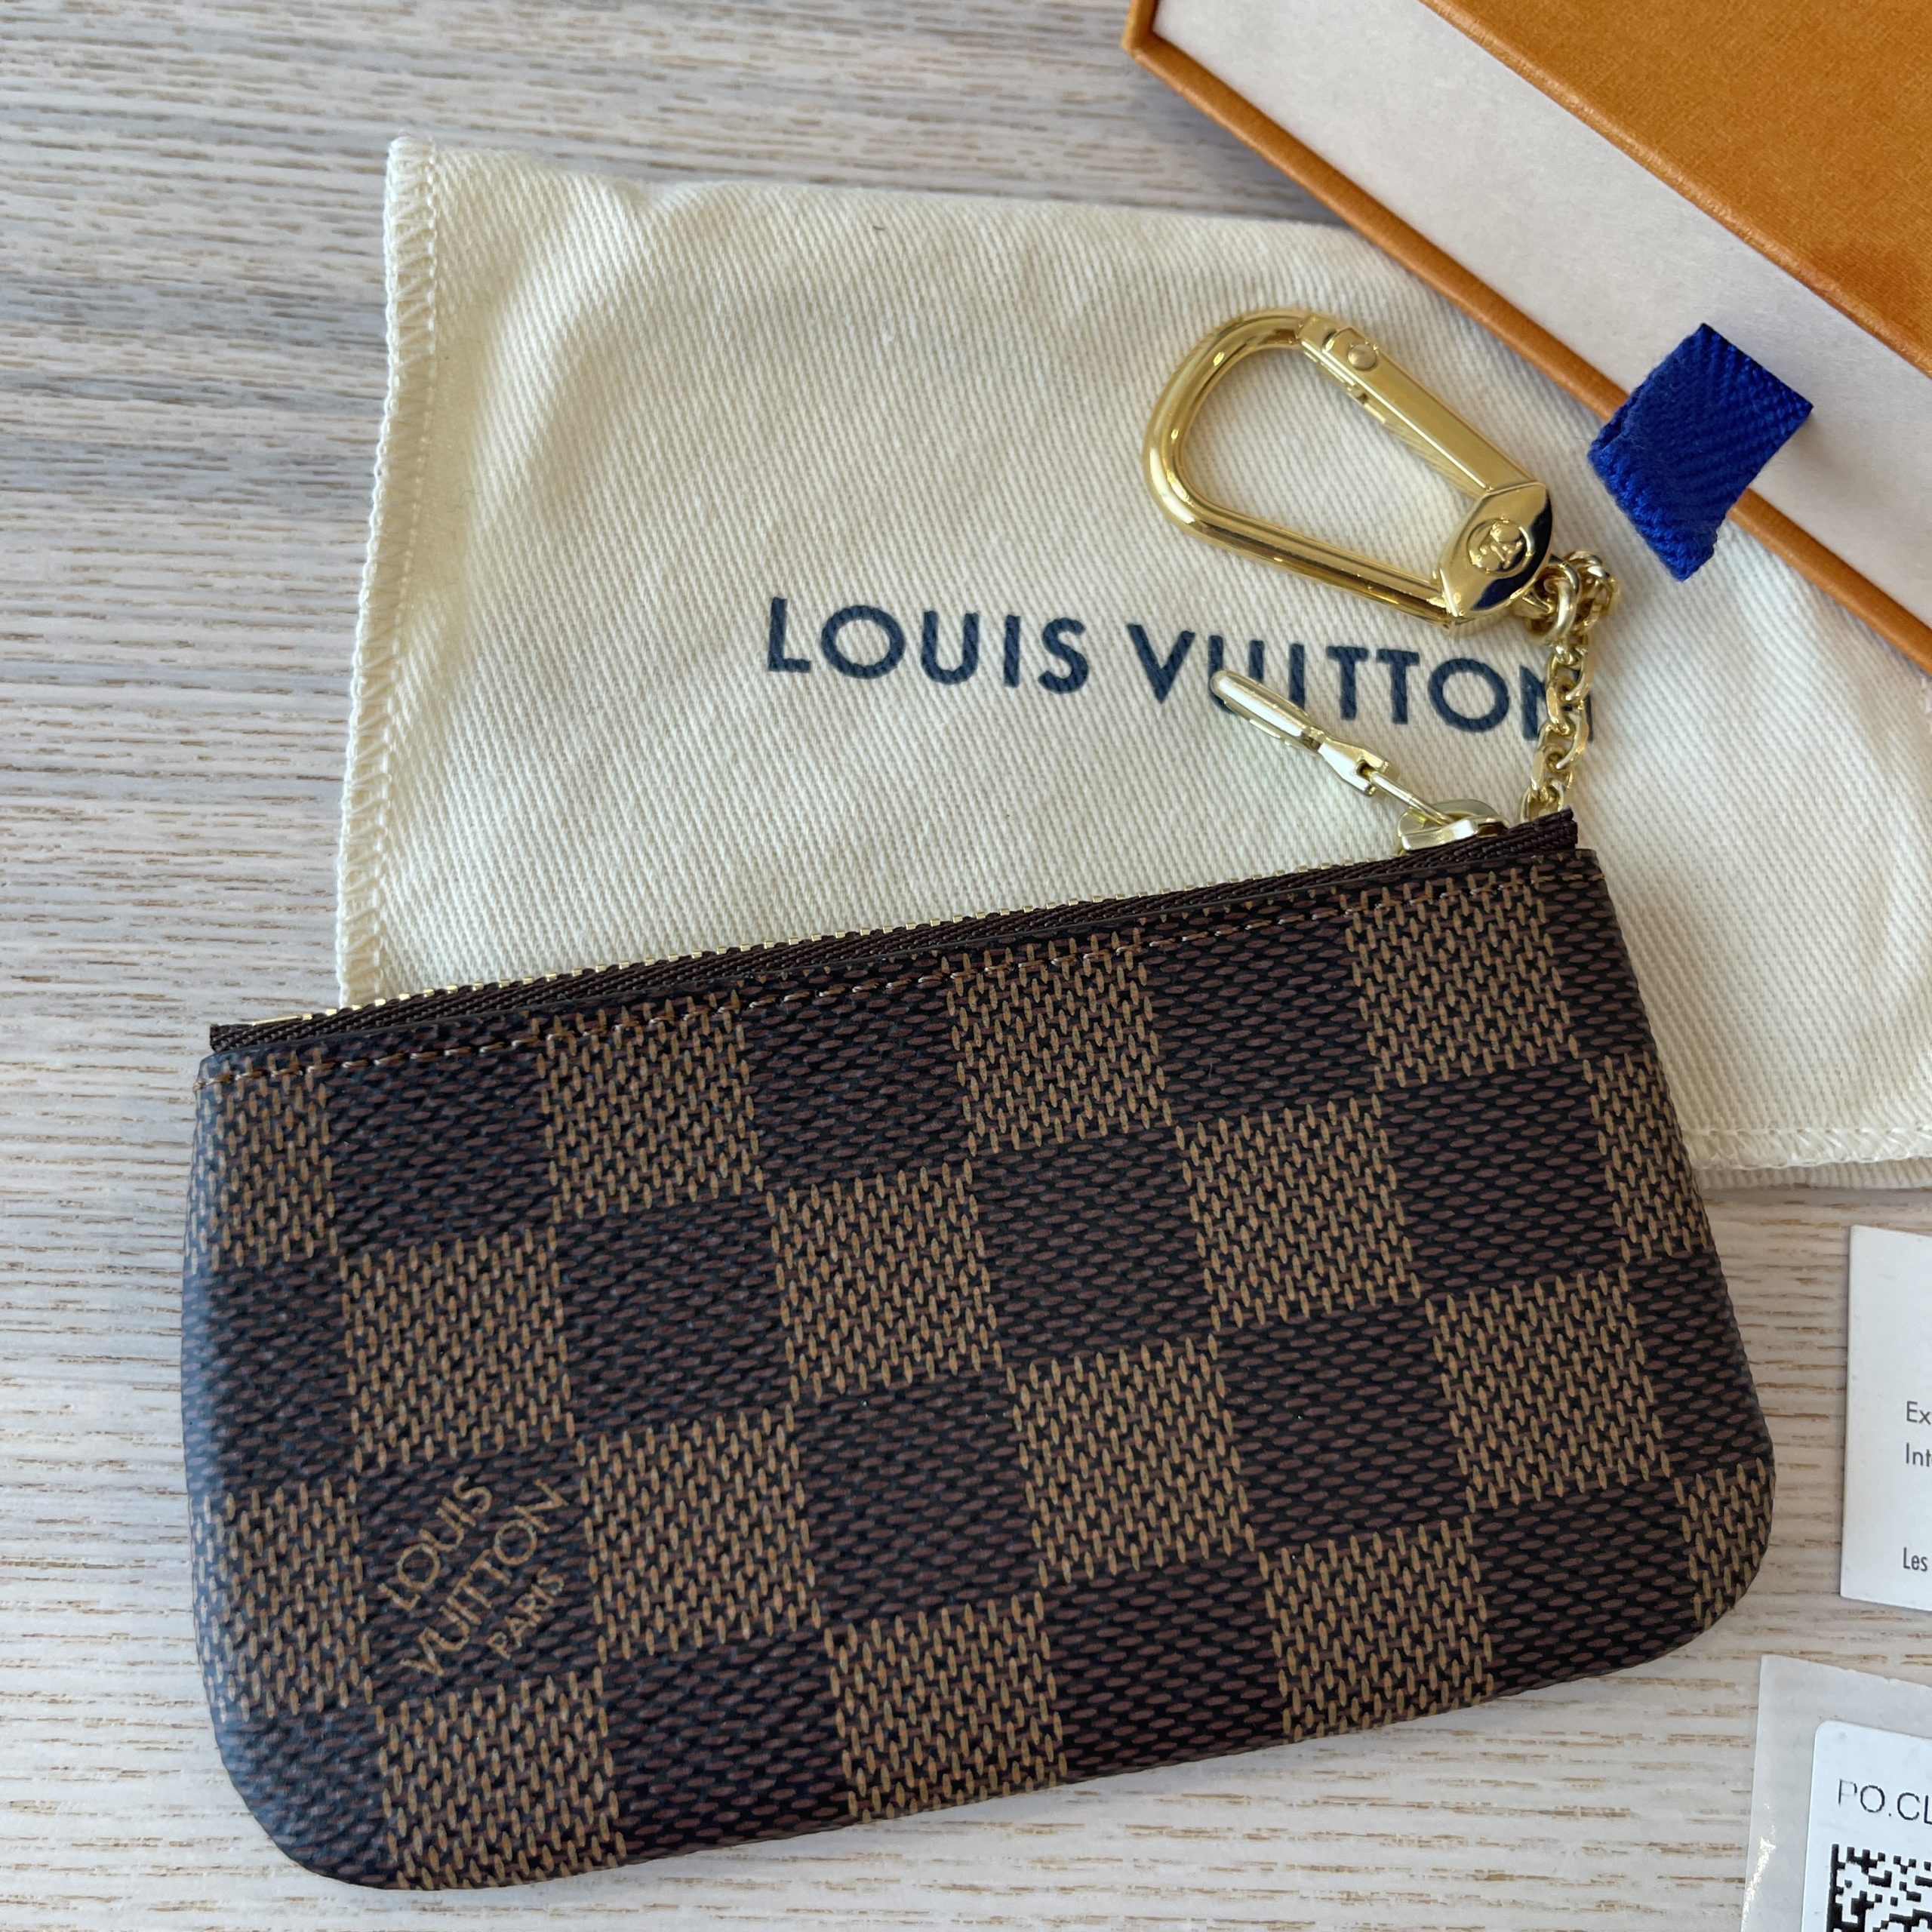 Authentic Louis Vuitton N62658 KEY POUCH